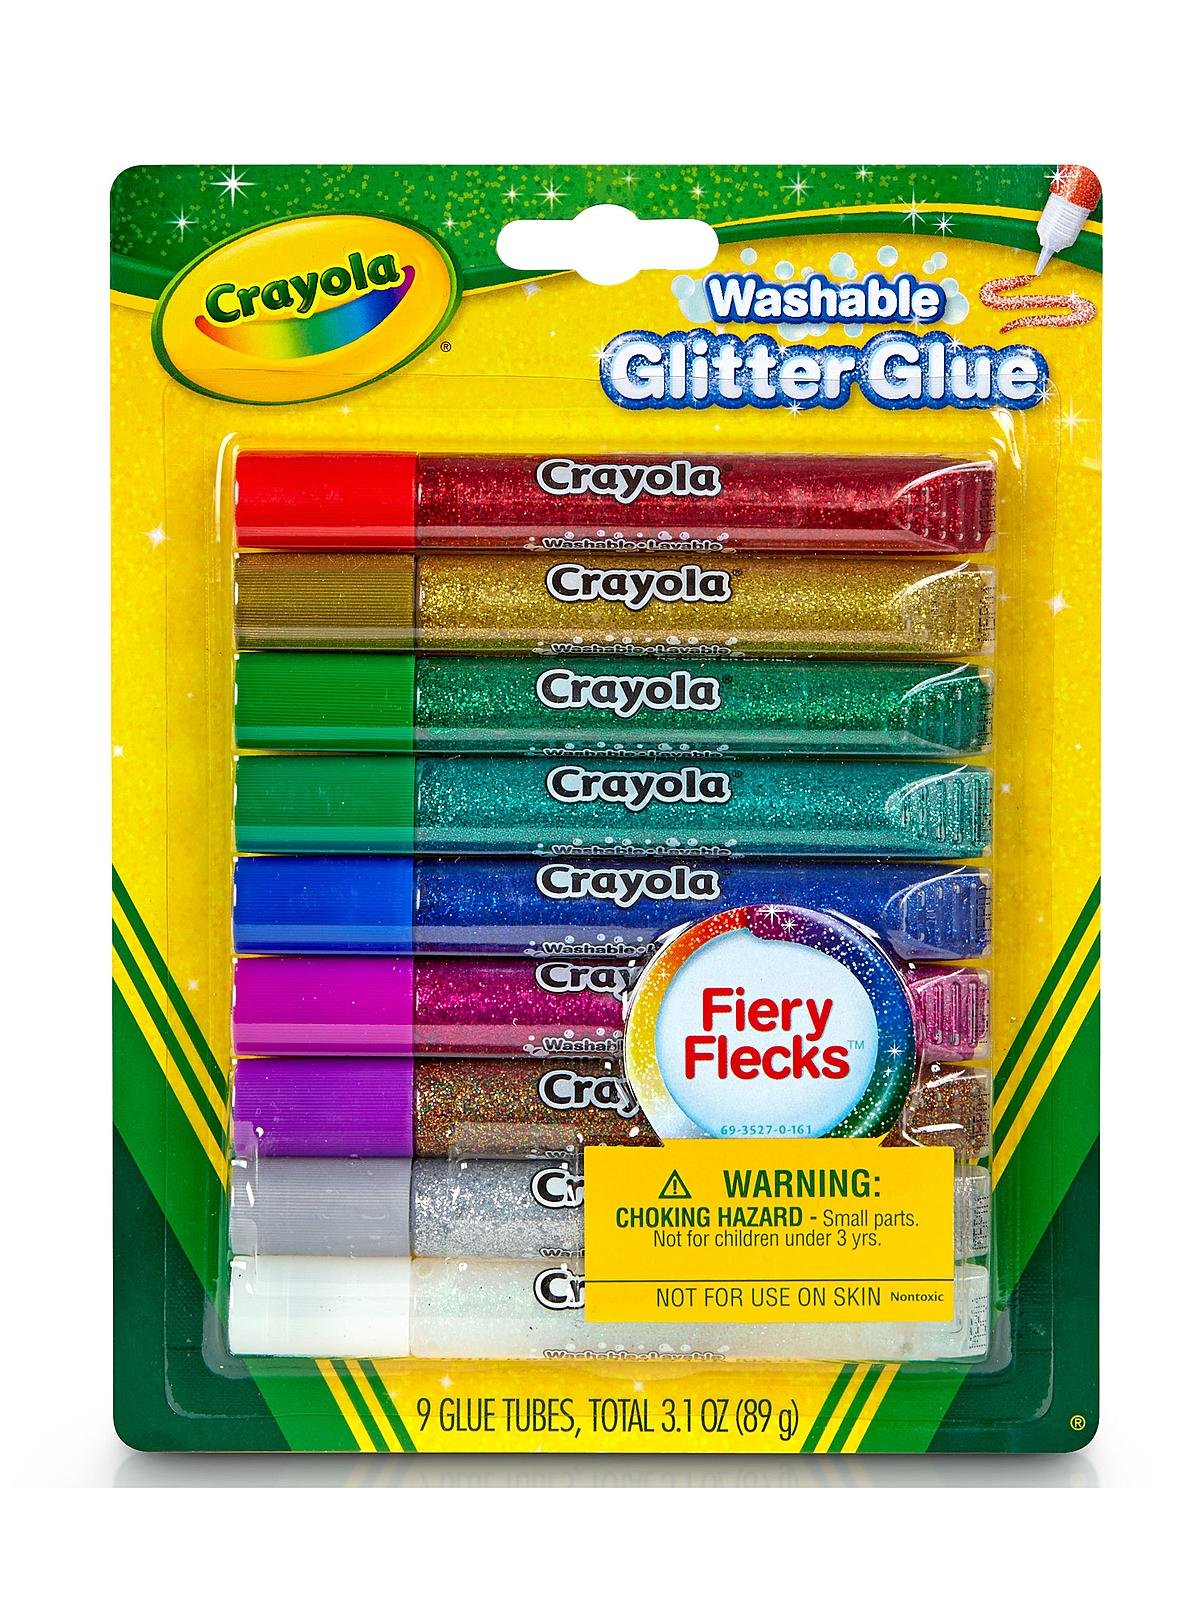 Crayola - Washable Glitter Glue